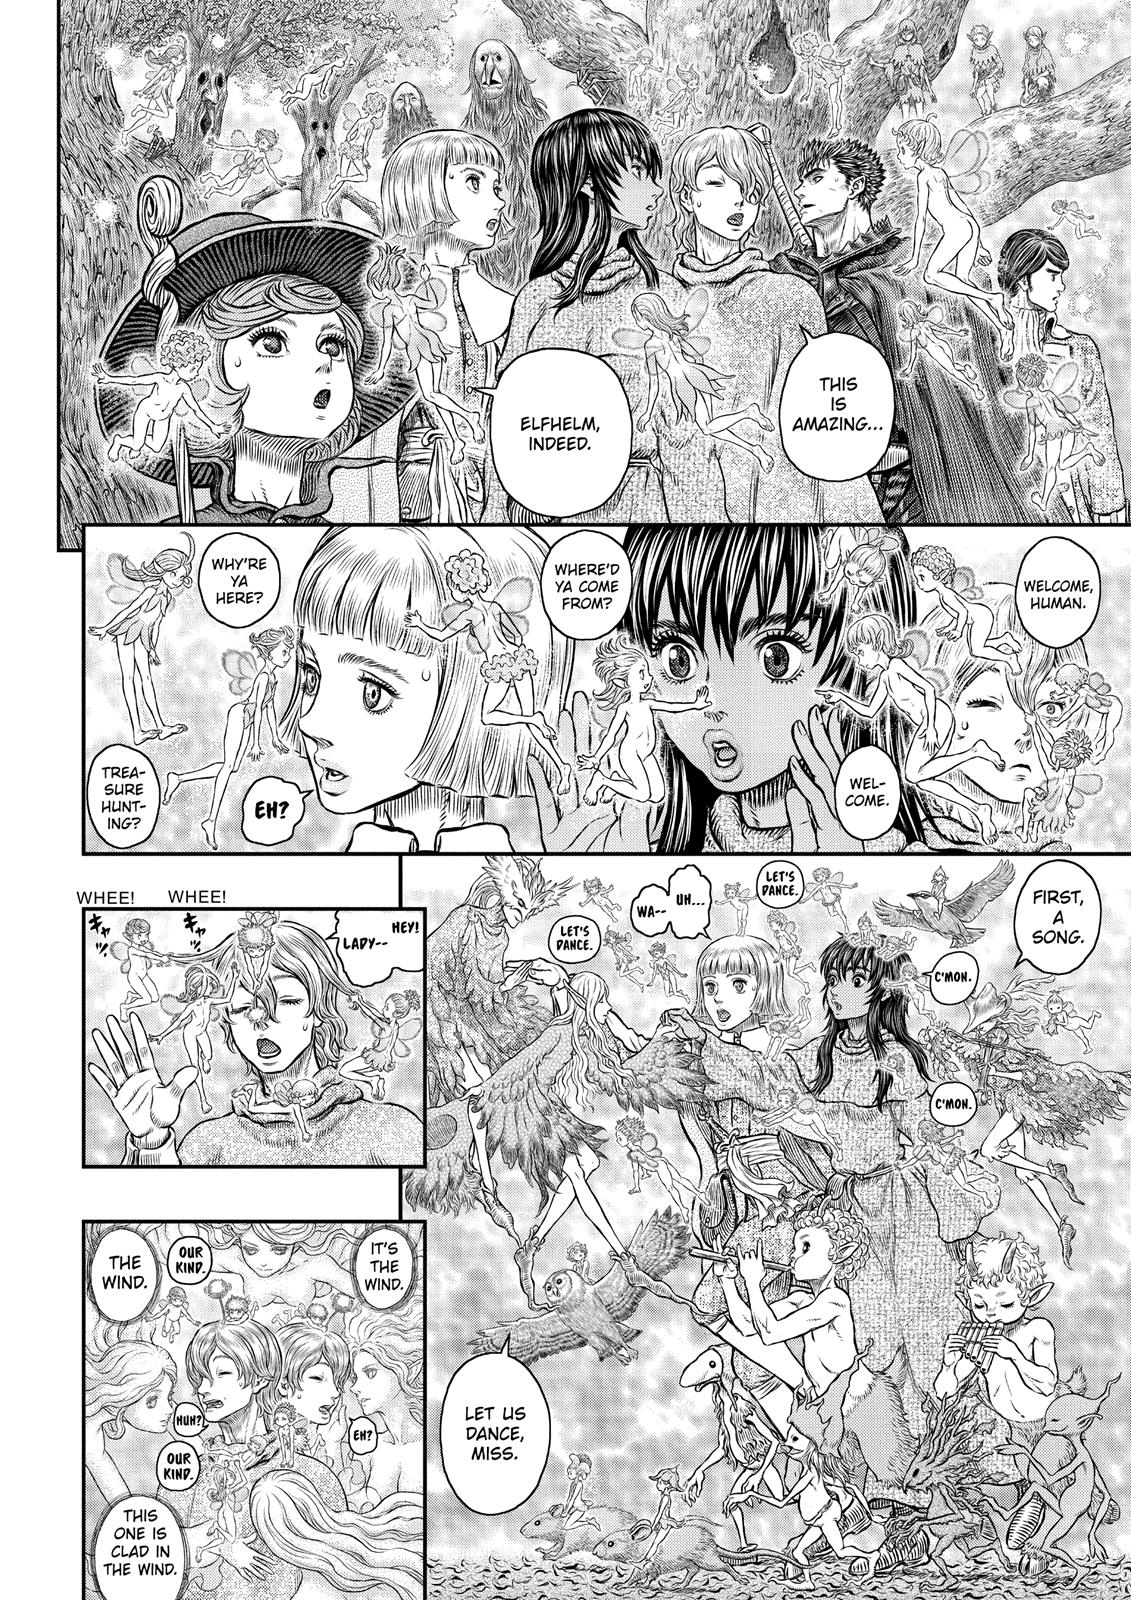 Berserk Manga Chapter 346 image 06